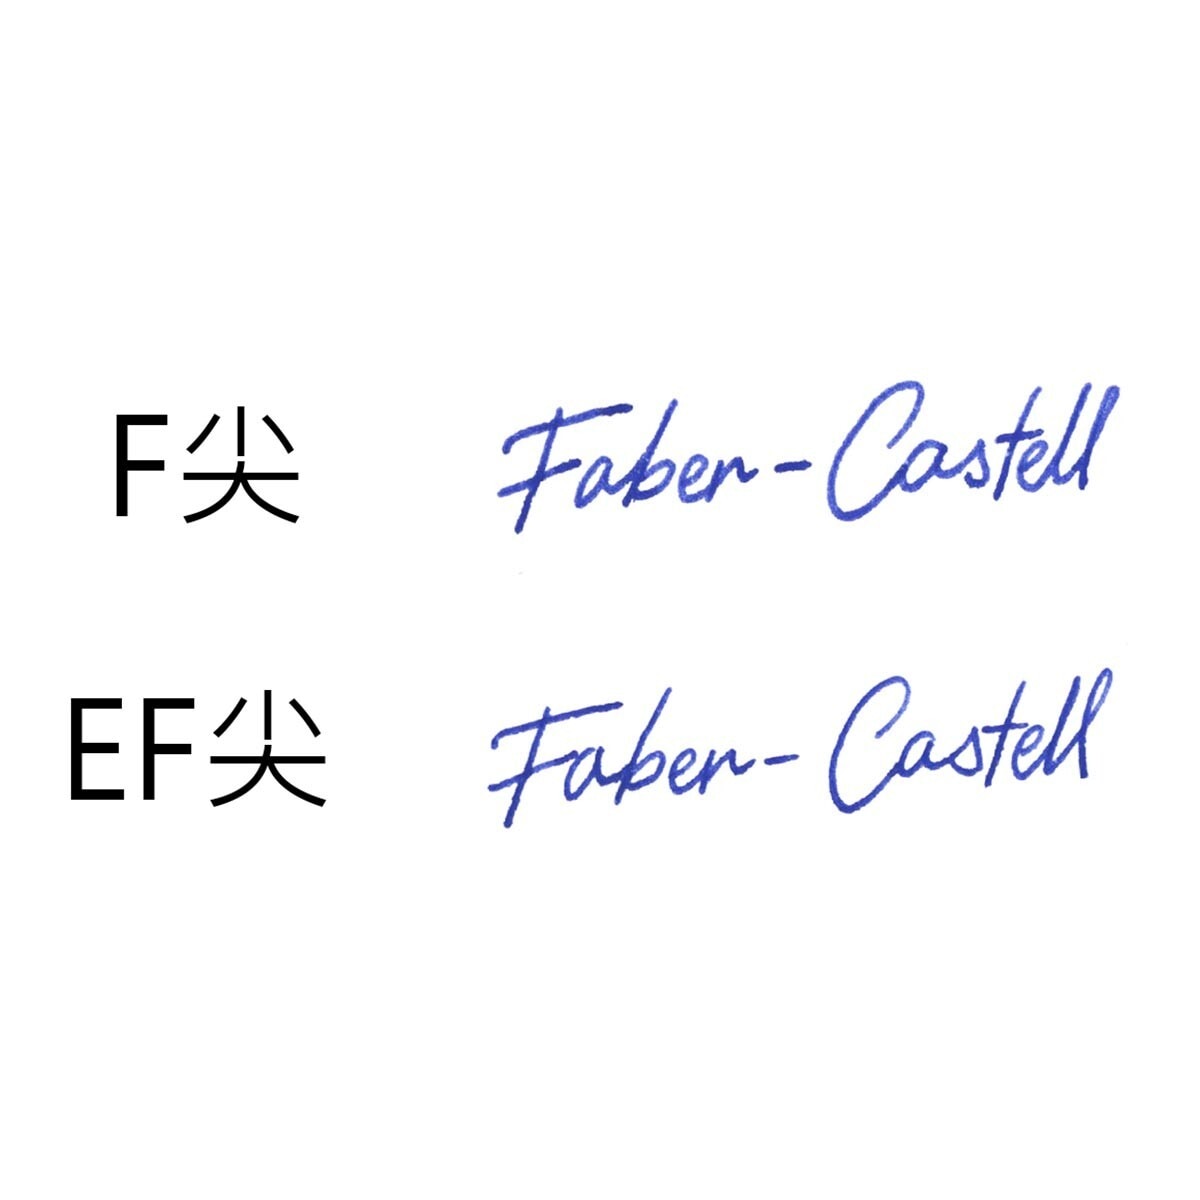 Graf Von Faber-Castell 輝柏 賓利聯名鋼筆 多種顏色選擇